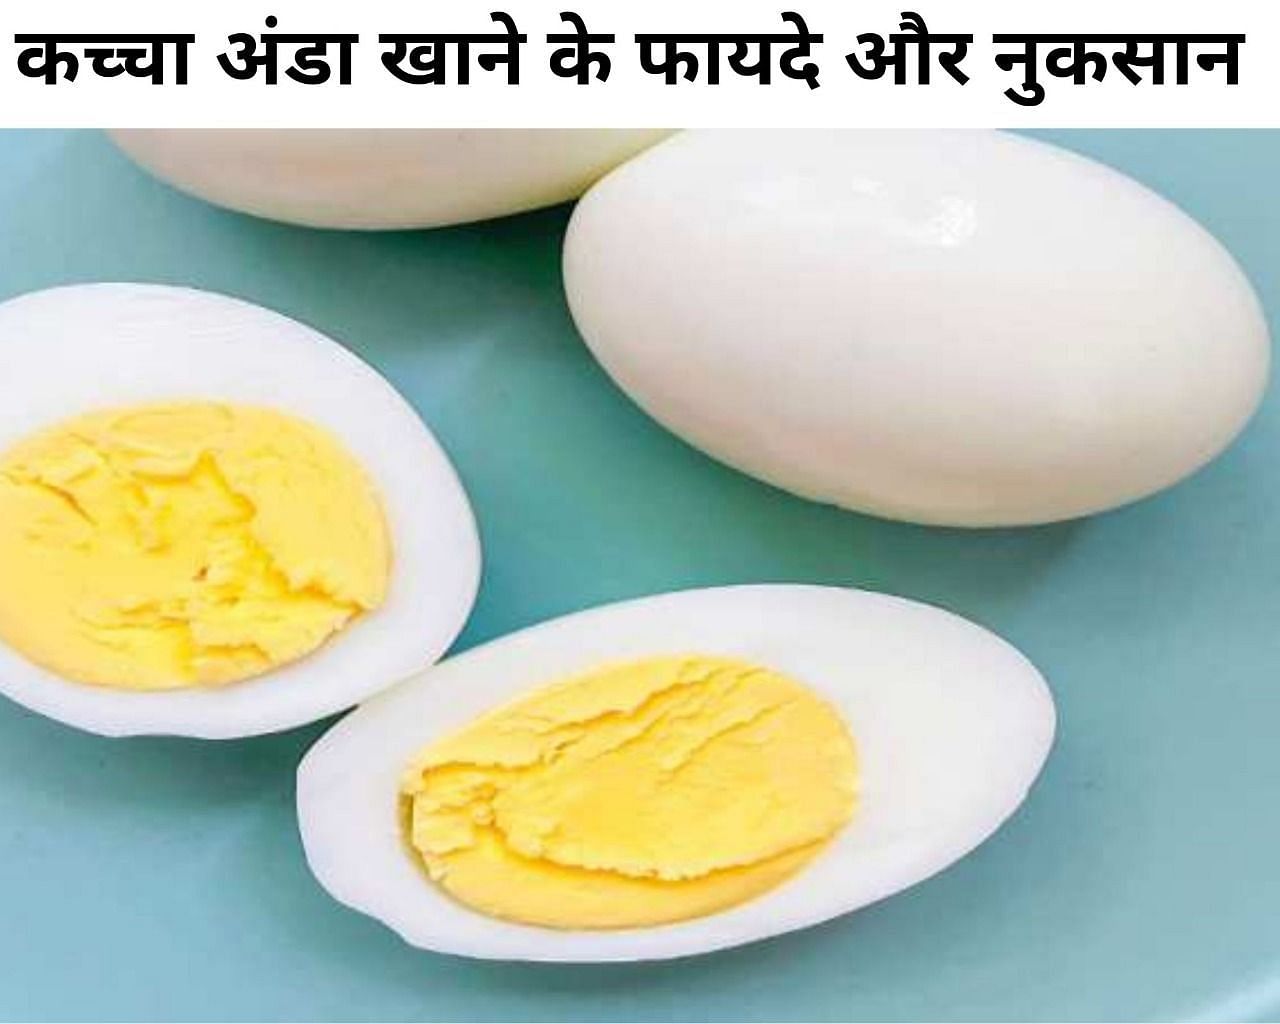 कच्चा अंडा खाने के 3 फायदे और 3 नुकसान (फोटो - sportskeedaहिंदी)